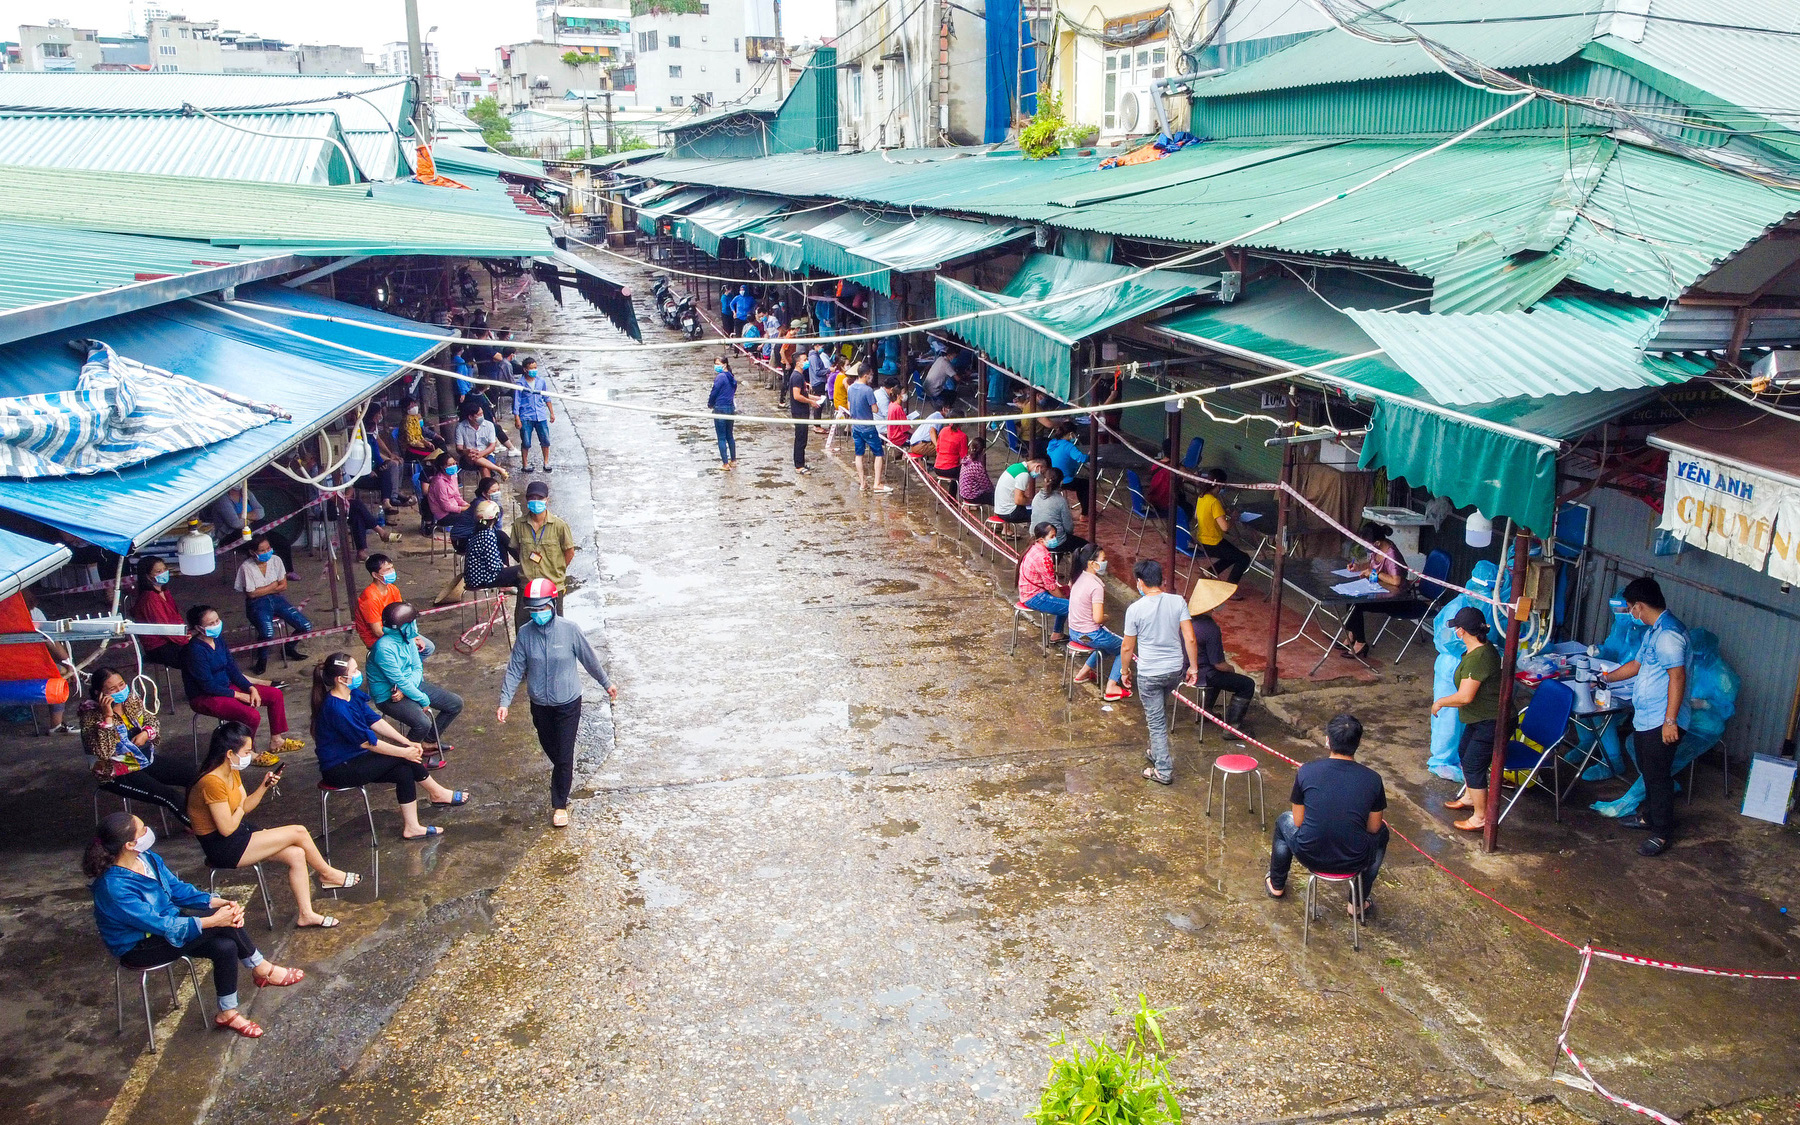 Tập trung lấy mẫu xét nghiệm cho hàng trăm tiểu thương tại chợ Phùng Khoang, Hà Nội